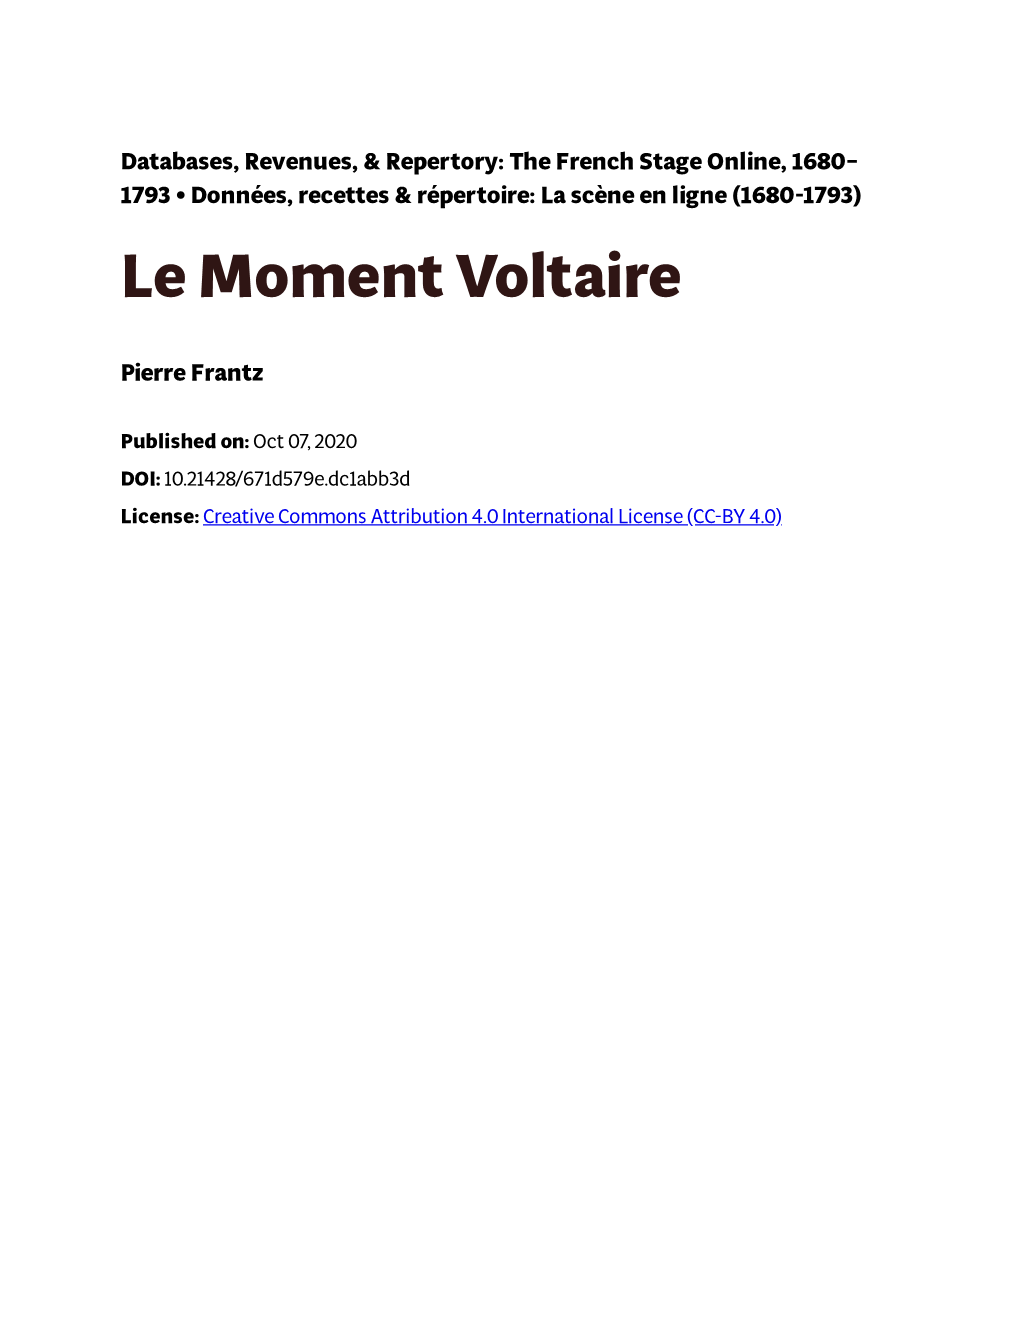 Le Moment Voltaire